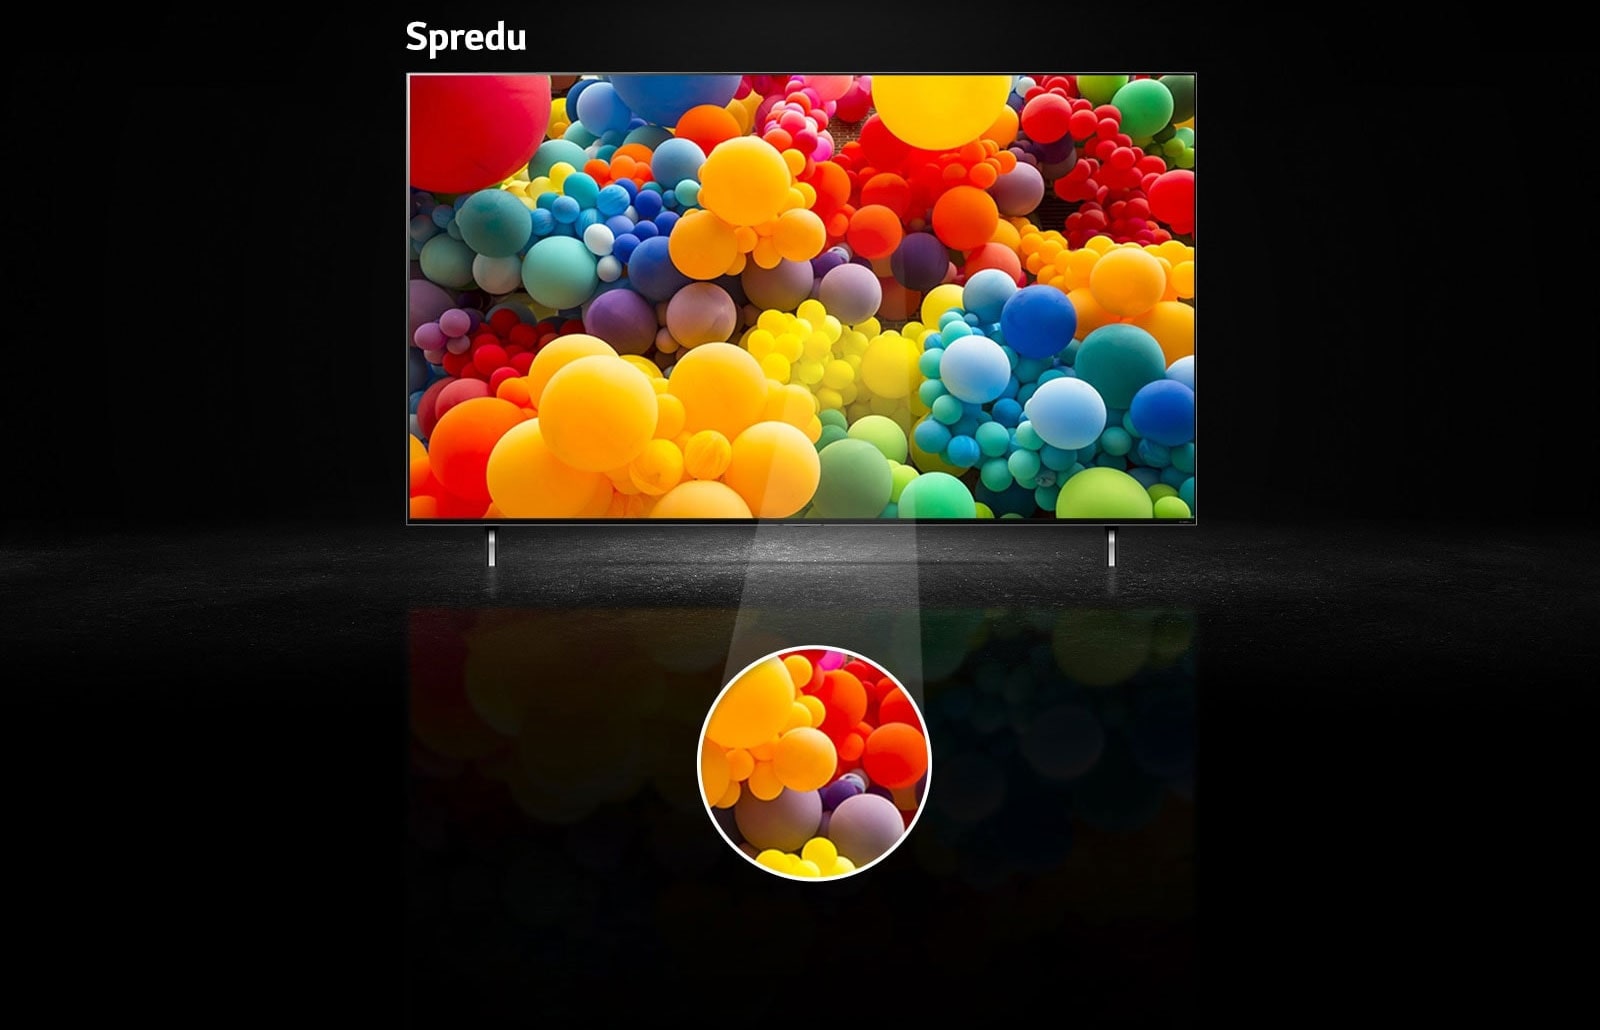 Pohľad spredu na obrazovku QNED s množstvom dúhových balónov. Nad televízorom sa zobrazuje text: Spredu. V strednej časti obrazovky je zvýraznený kruh.